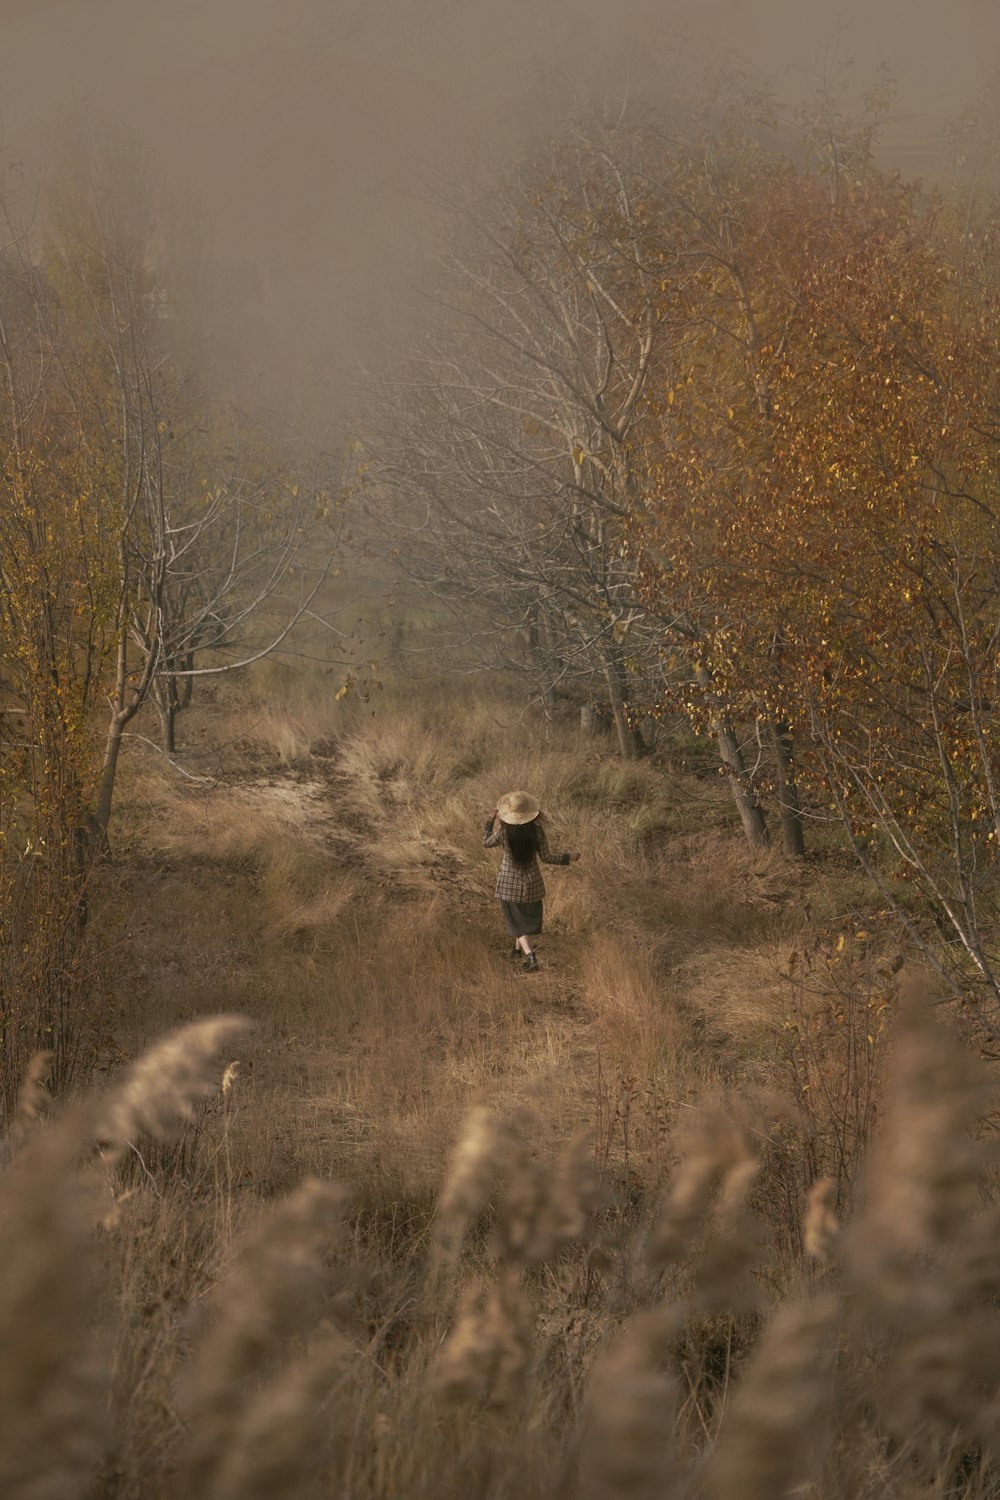 a person walking through a field